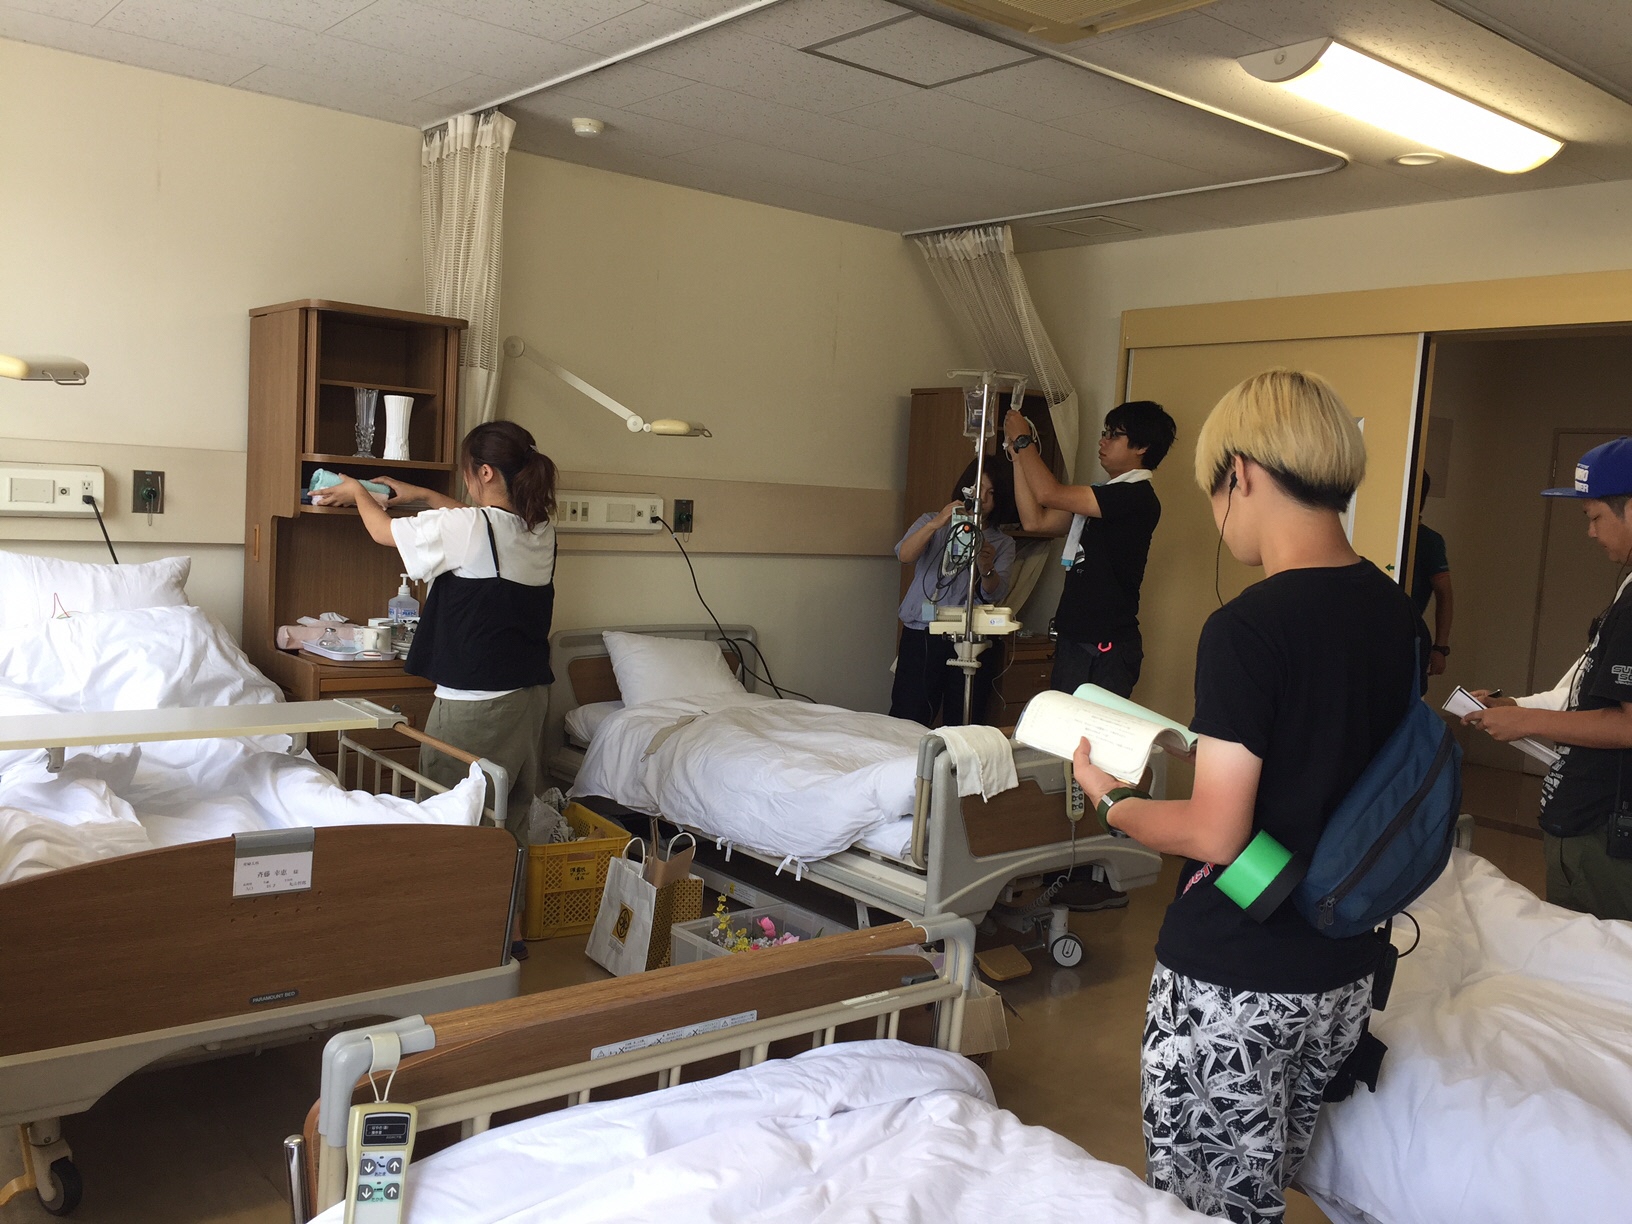 4台のベットがある病室で、スタッフの方が点滴の道具や棚にタオルを並べるなど撮影の準備をしている様子の写真